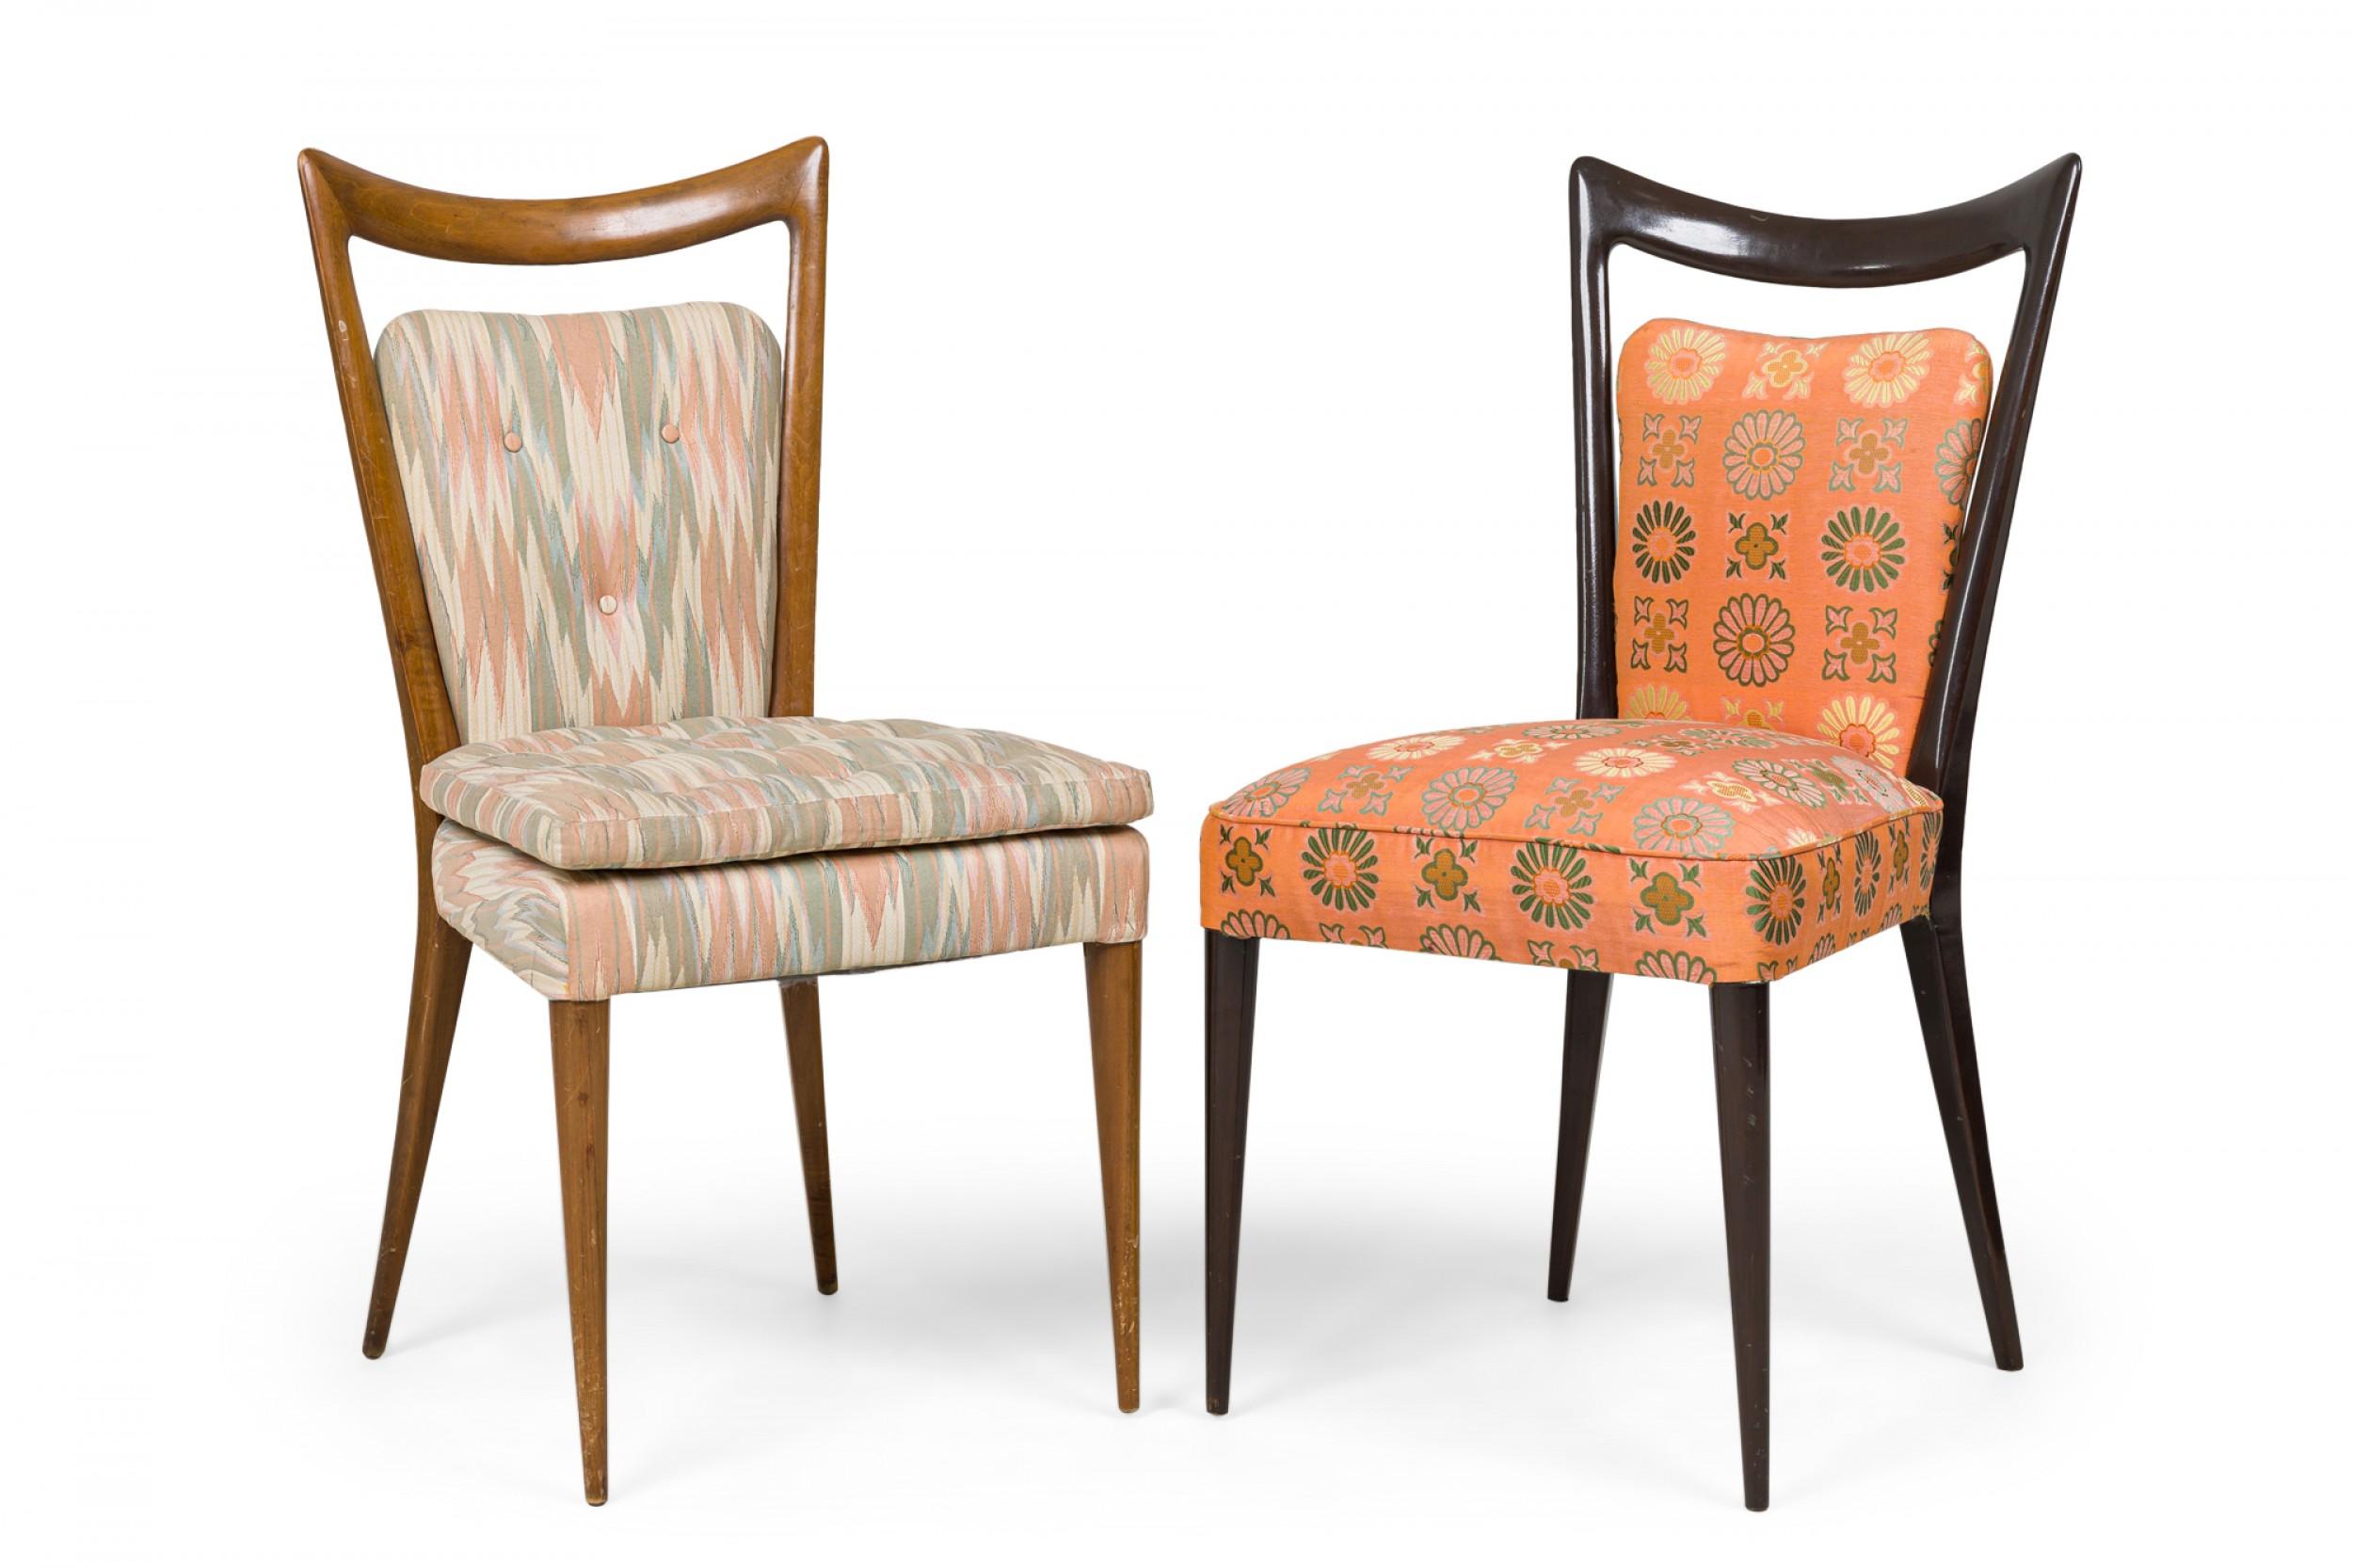 6er-Set italienischer Esszimmerstühle aus der Mitte des Jahrhunderts (1950er Jahre) mit geformten Rückenlehnen und doppelt gepolsterten Sitzkissen, bezogen mit einem pastellfarbenen, zickzack gemusterten Stoff mit Knopftuft. (Melchiorre BEGA) (PREIS